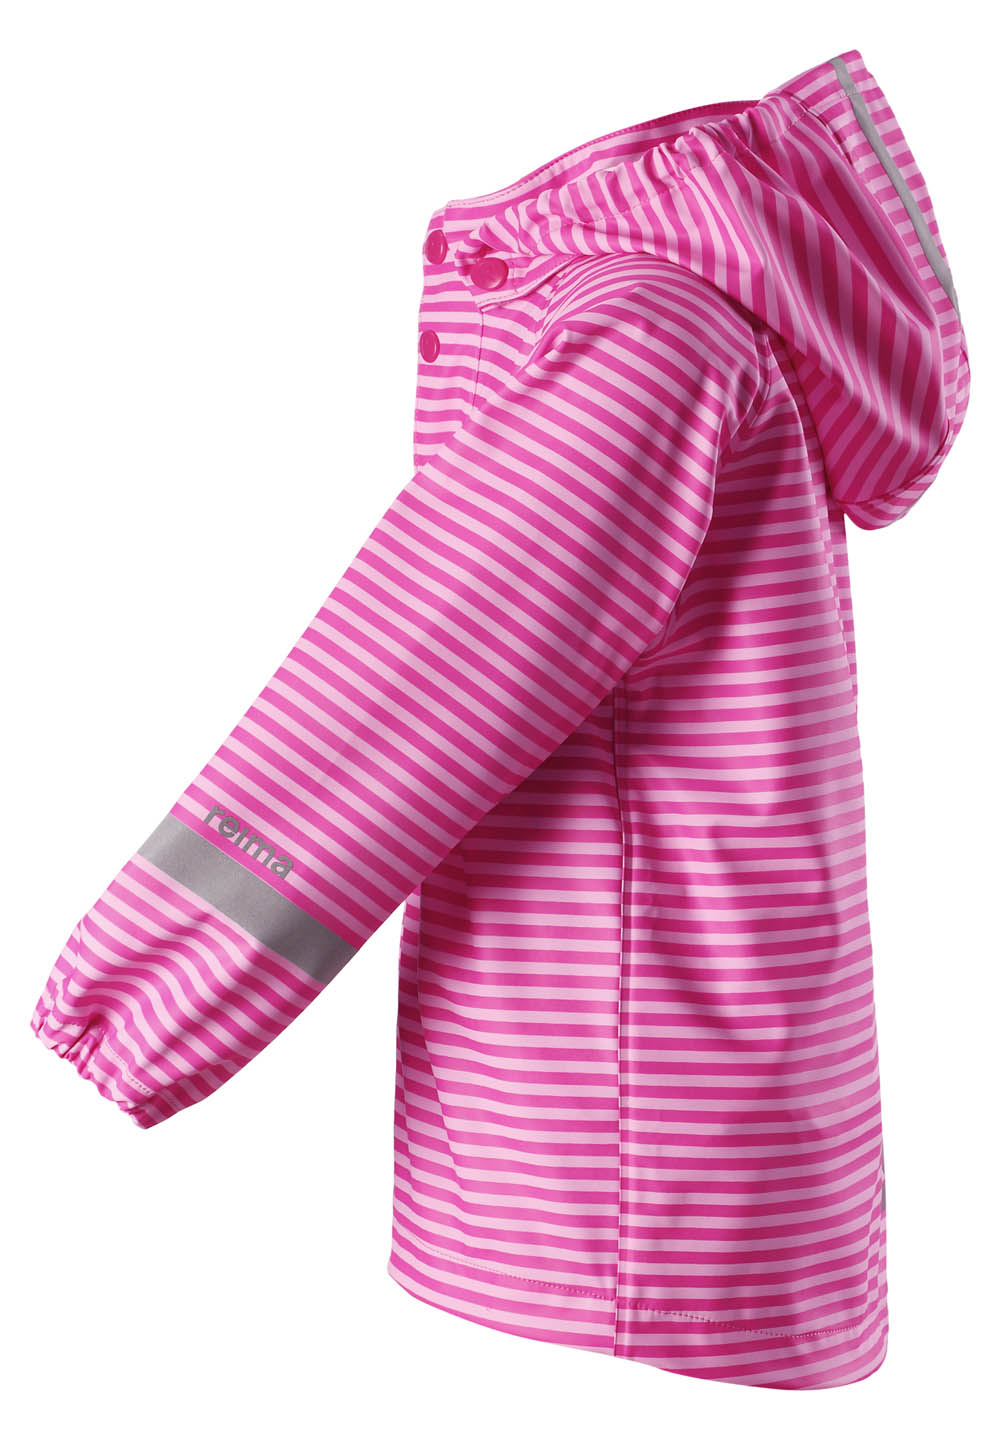 Куртка для активного отдыха детская Reima 2018 Vesi PINK